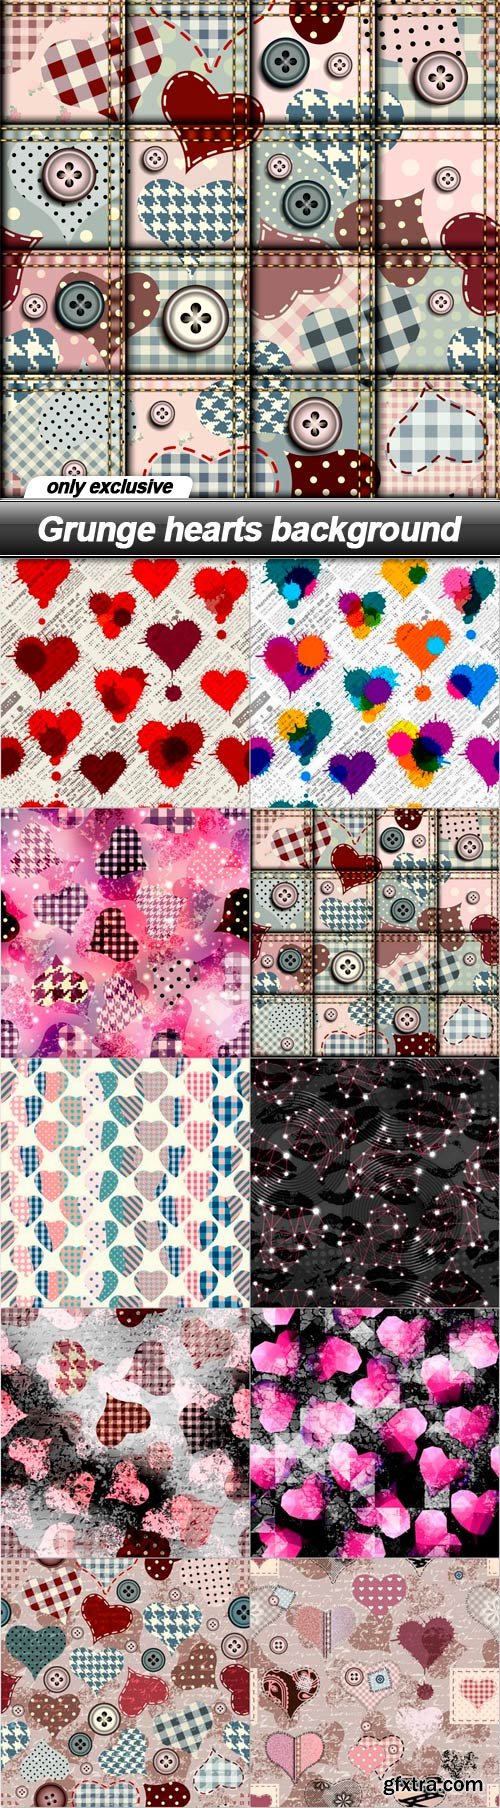 Grunge hearts background - 10 EPS